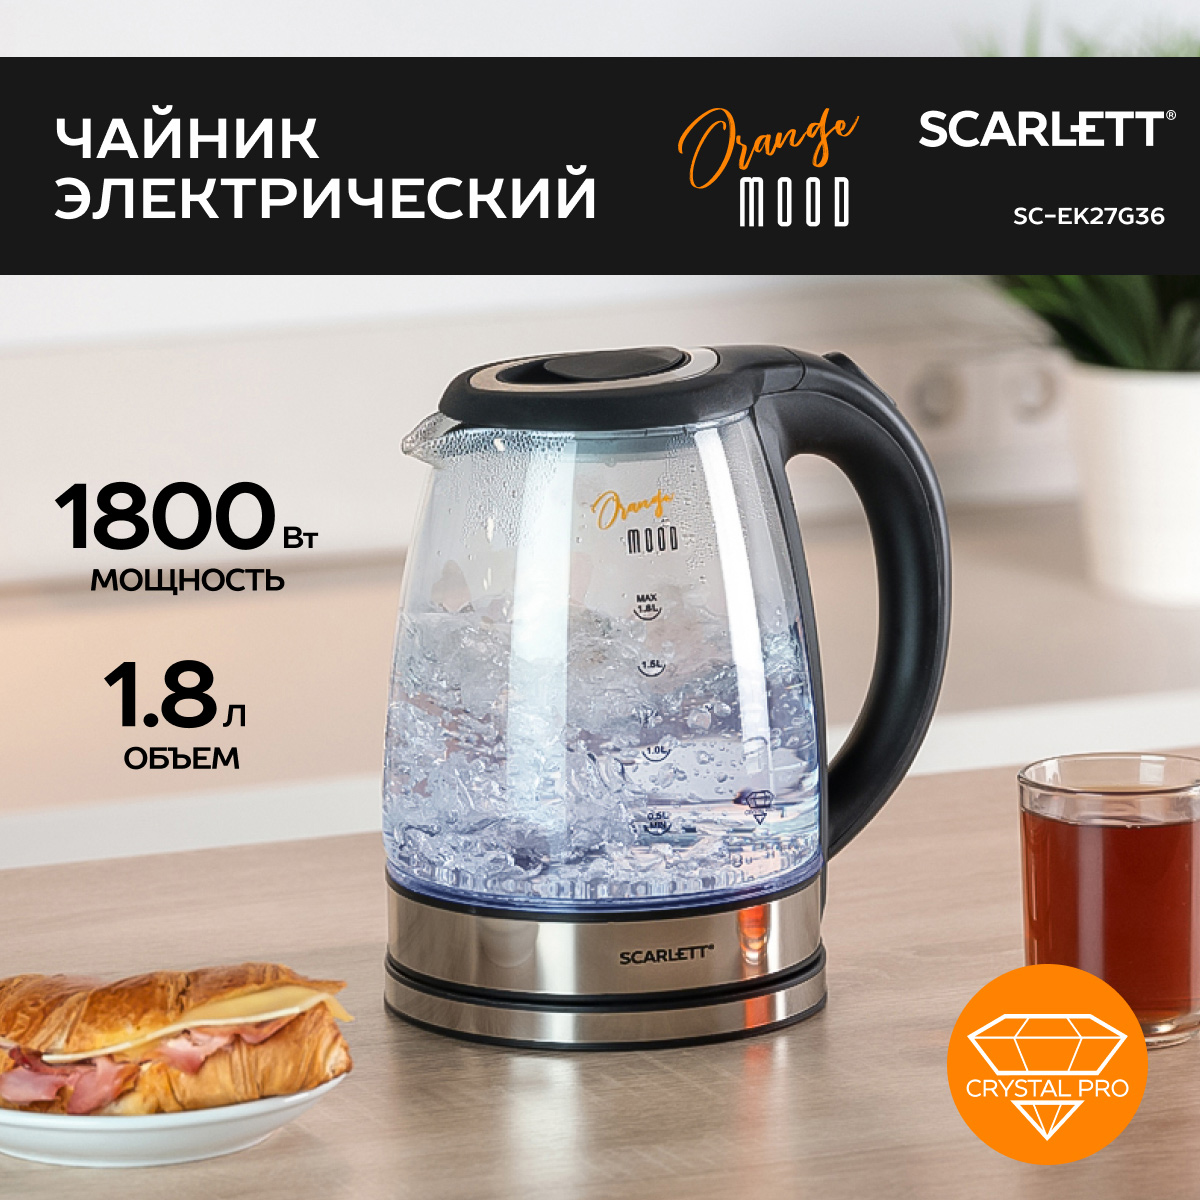 Чайник электрический Scarlett SC-EK27G36, купить в Москве, цены в интернет-магазинах на Мегамаркет